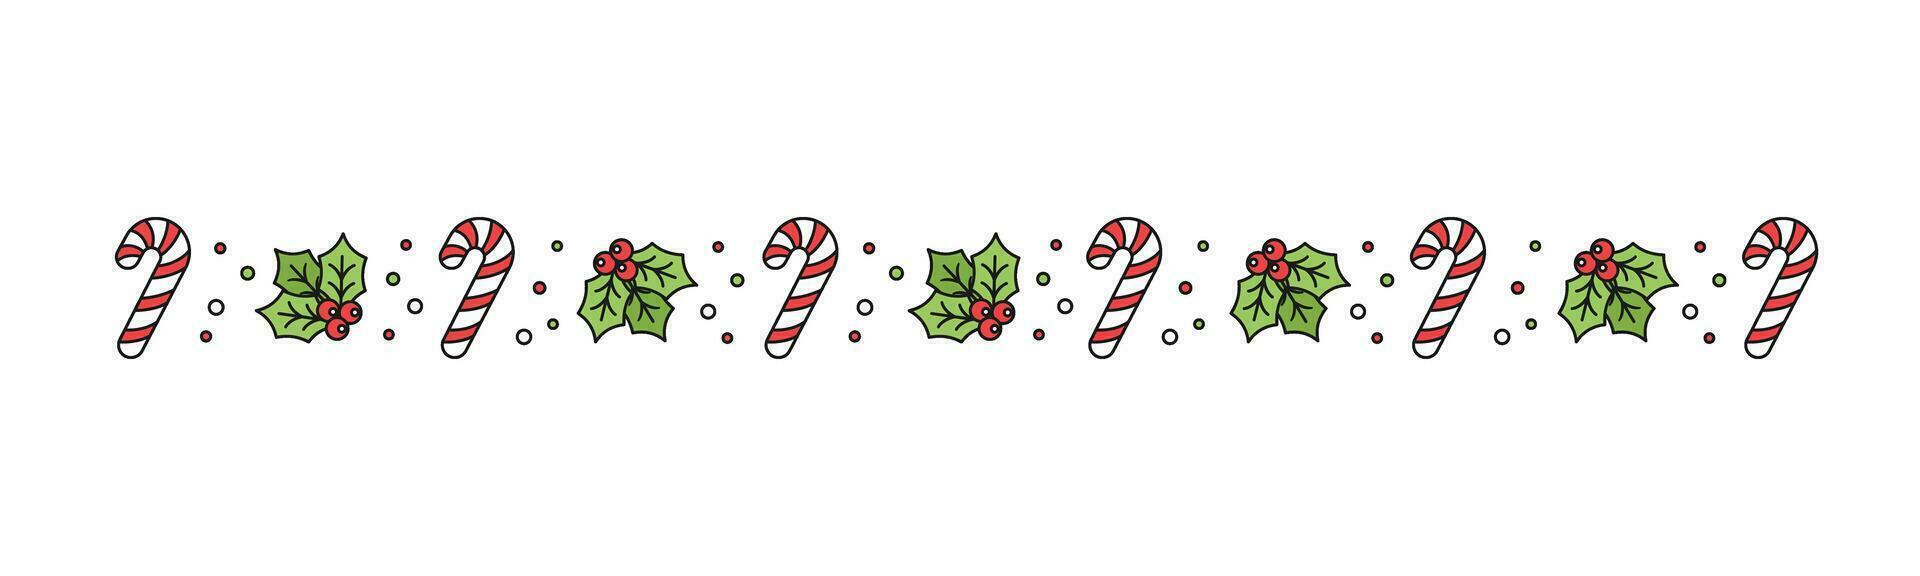 Natale a tema decorativo confine e testo divisore, vischio e caramella canna modello. vettore illustrazione.